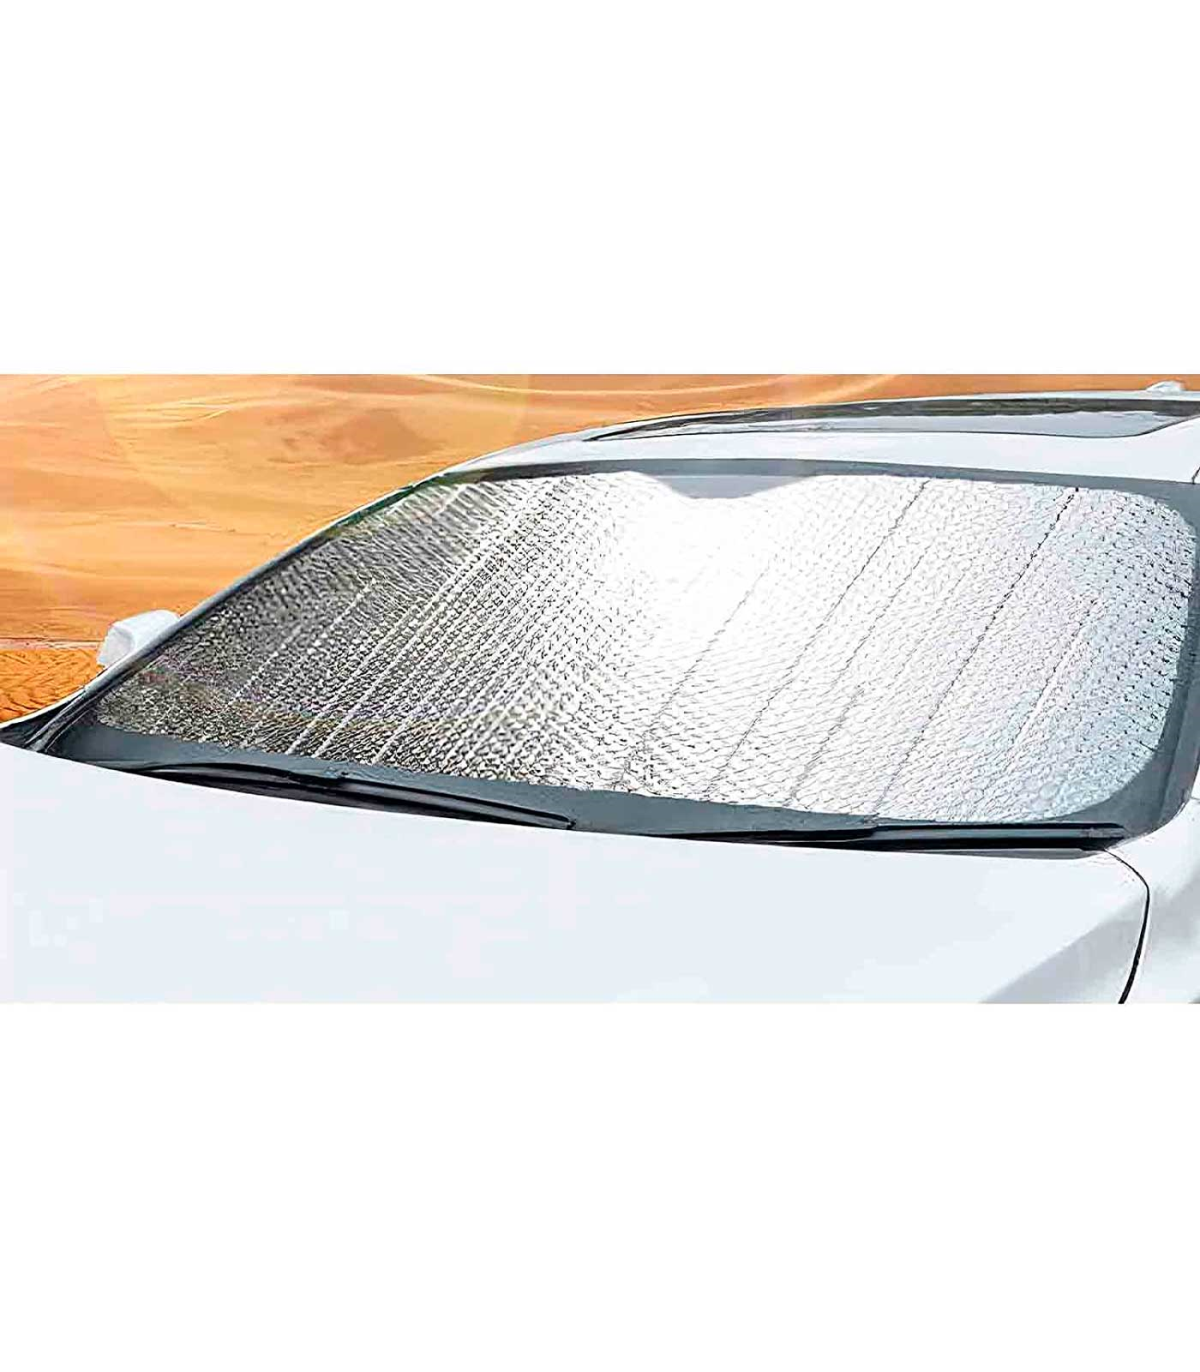 Parasol Coche Parabrisas delantero Blanco Ojos enojados Protector solar  Coche Accesorios de coche personalizados Regalos Protector solar del coche  Cubiertas de parabrisas delantero